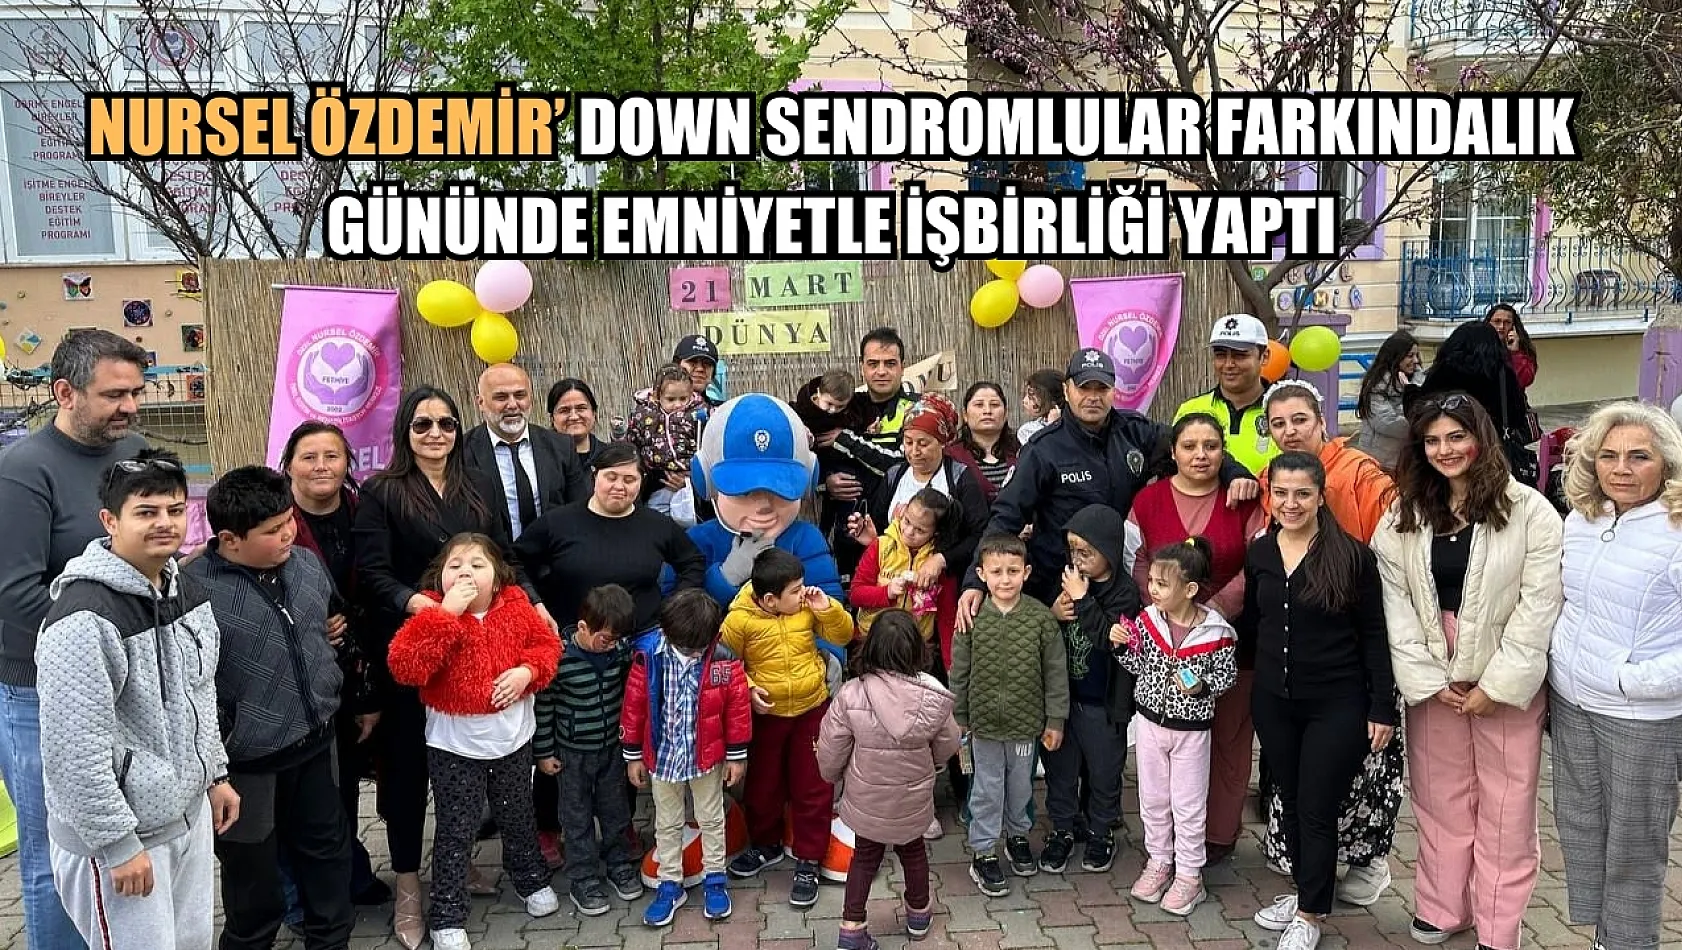 Nursel Özdemir' Down Sendromlular Farkındalık Gününde Emniyetle İşbirliği Yaptı